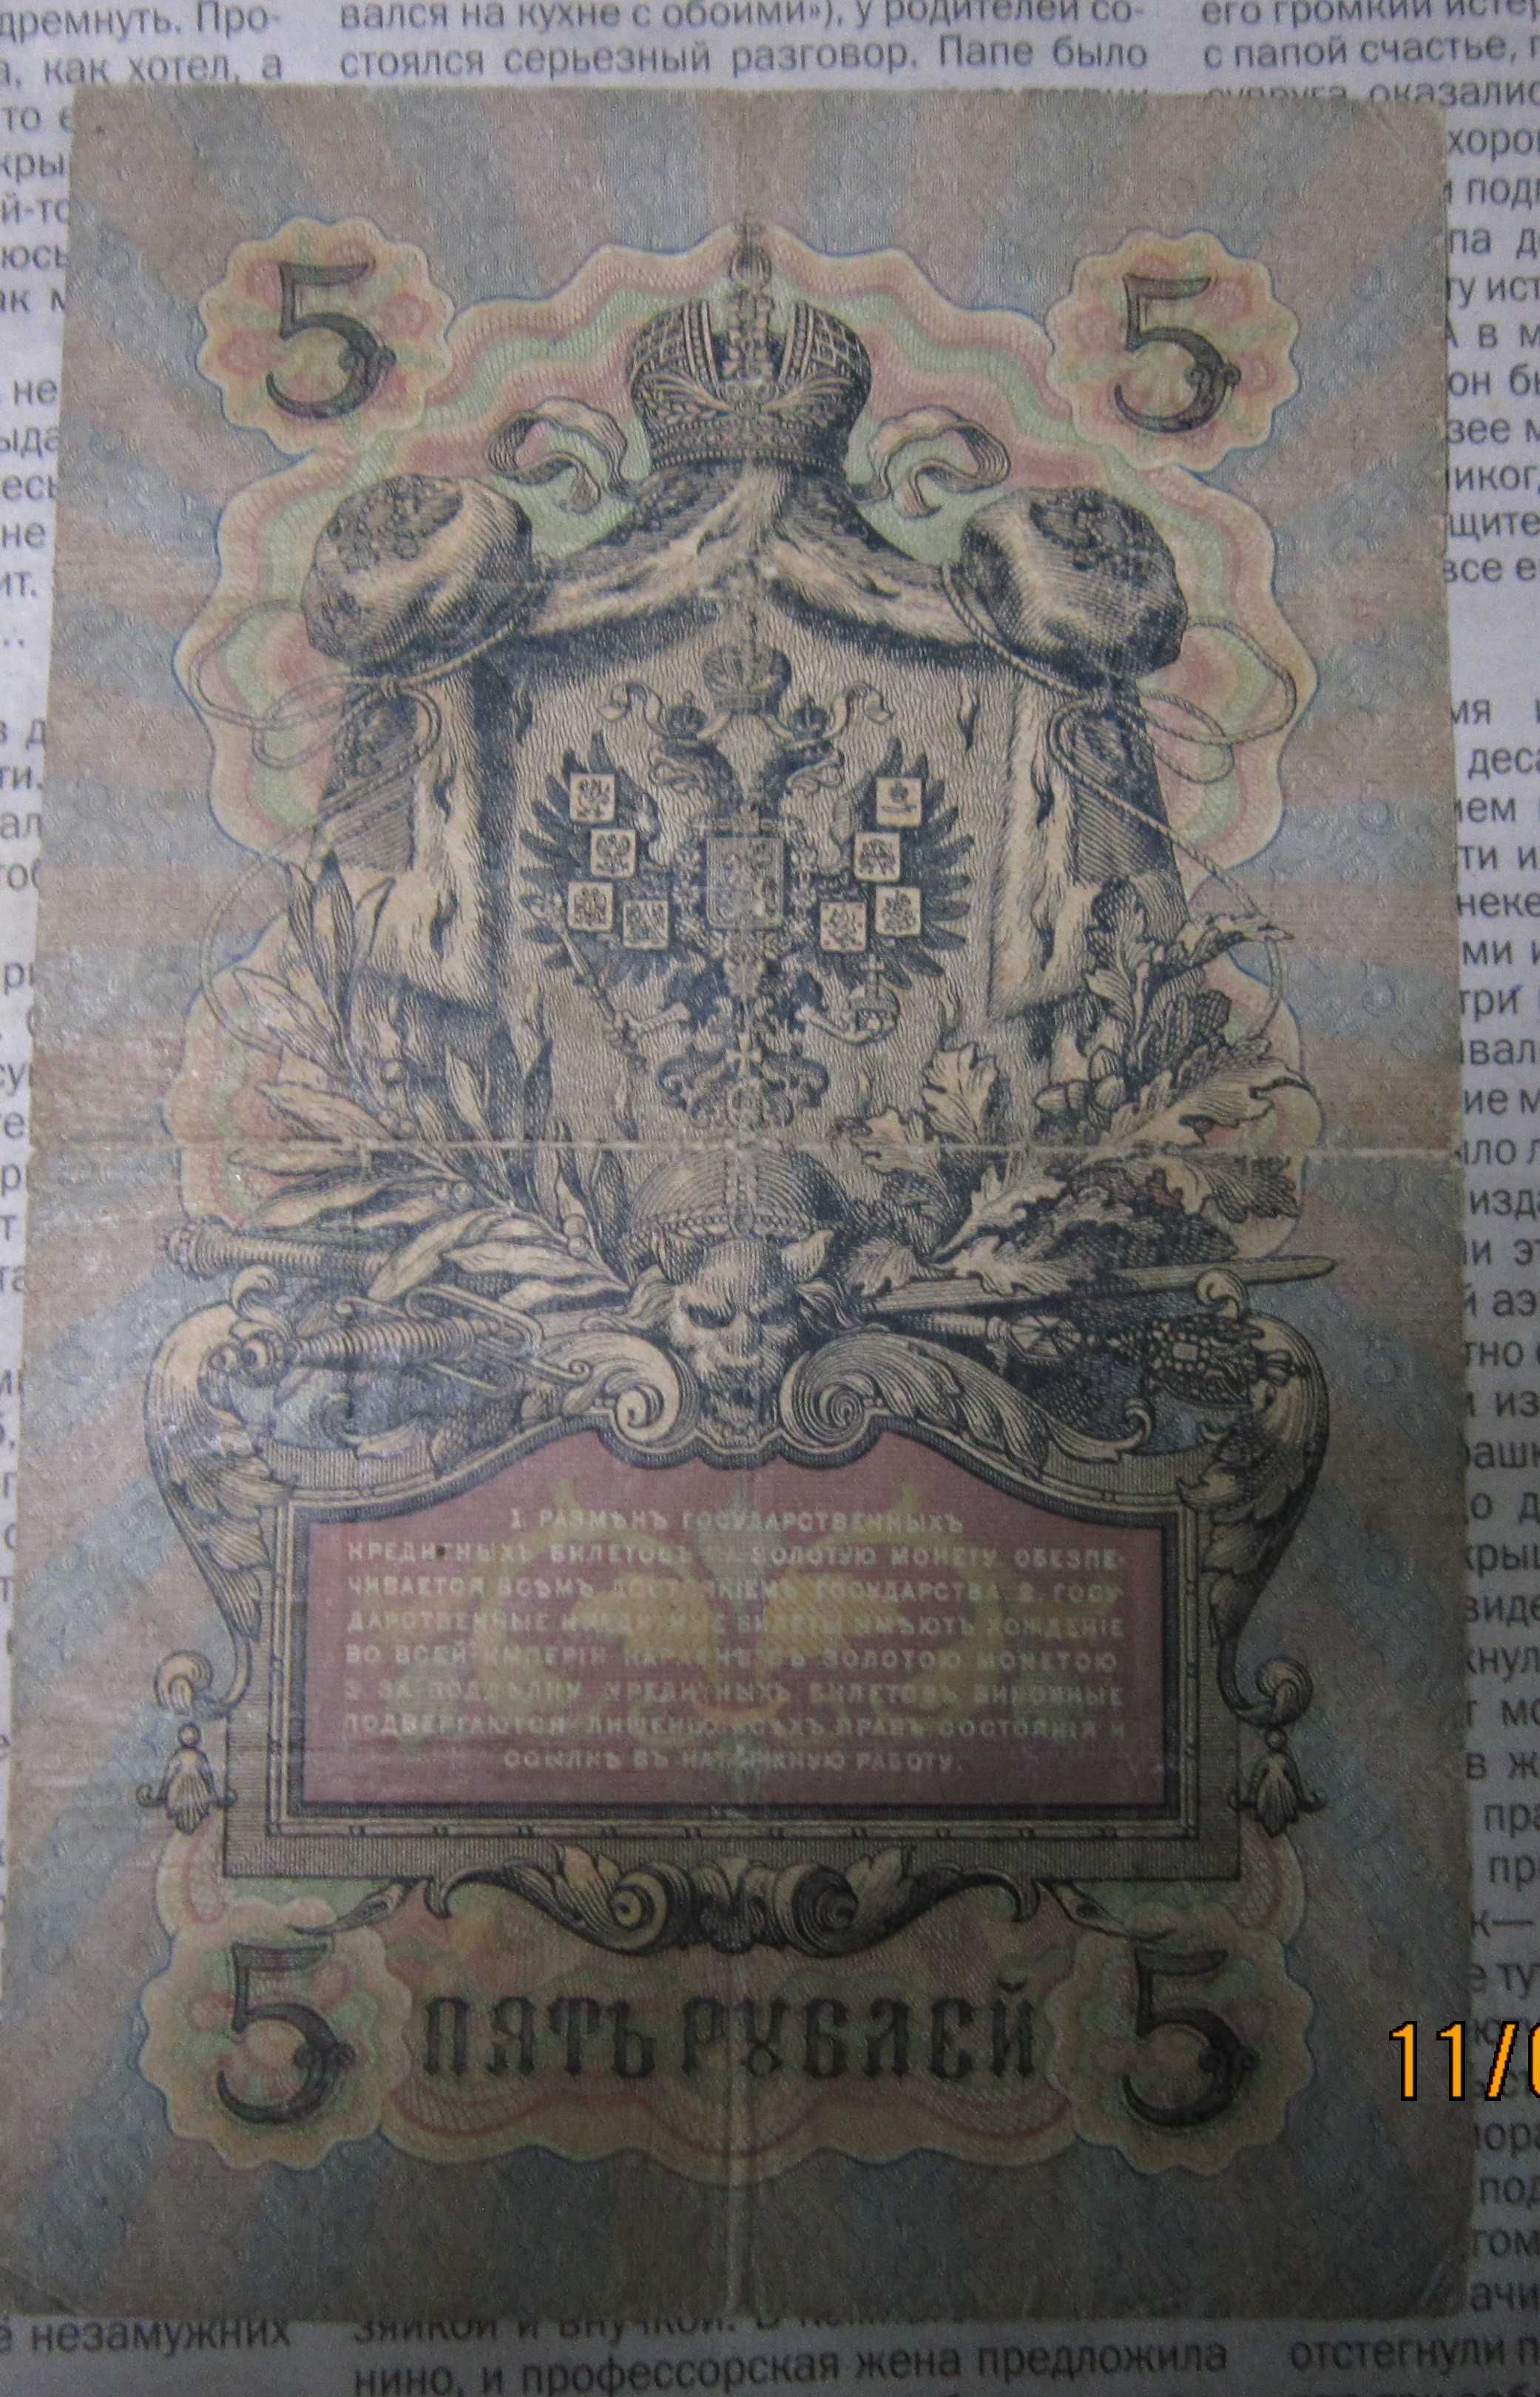 5 рублей Николая II с подписьюкассира Брута